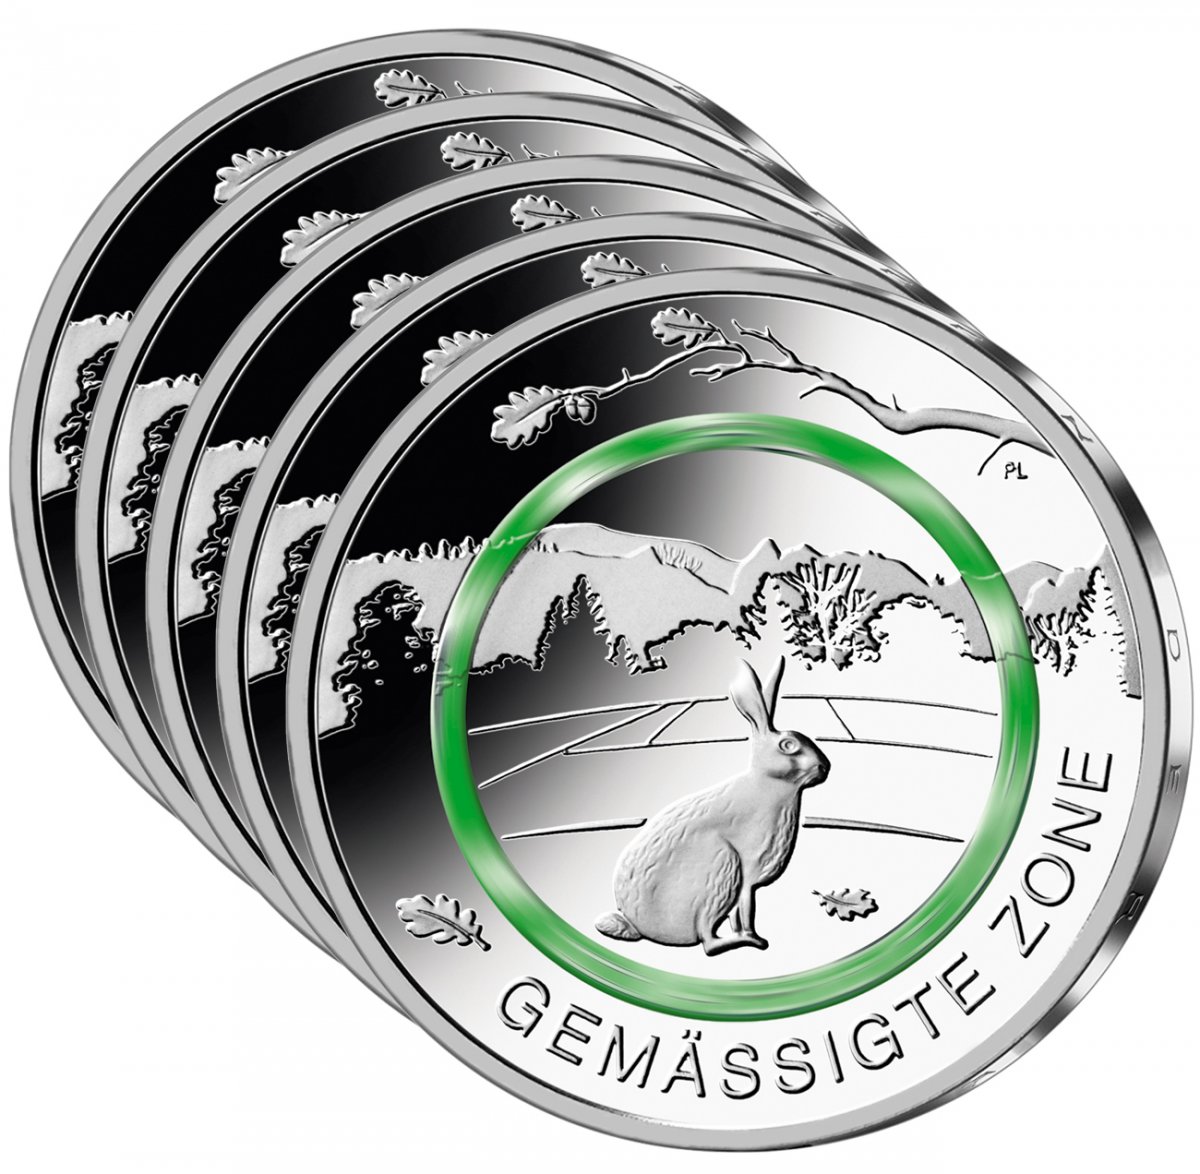 5-Euro-Polymerring-Sammlermünzen-Set 2019 "Gemäßigte Zone"                                           